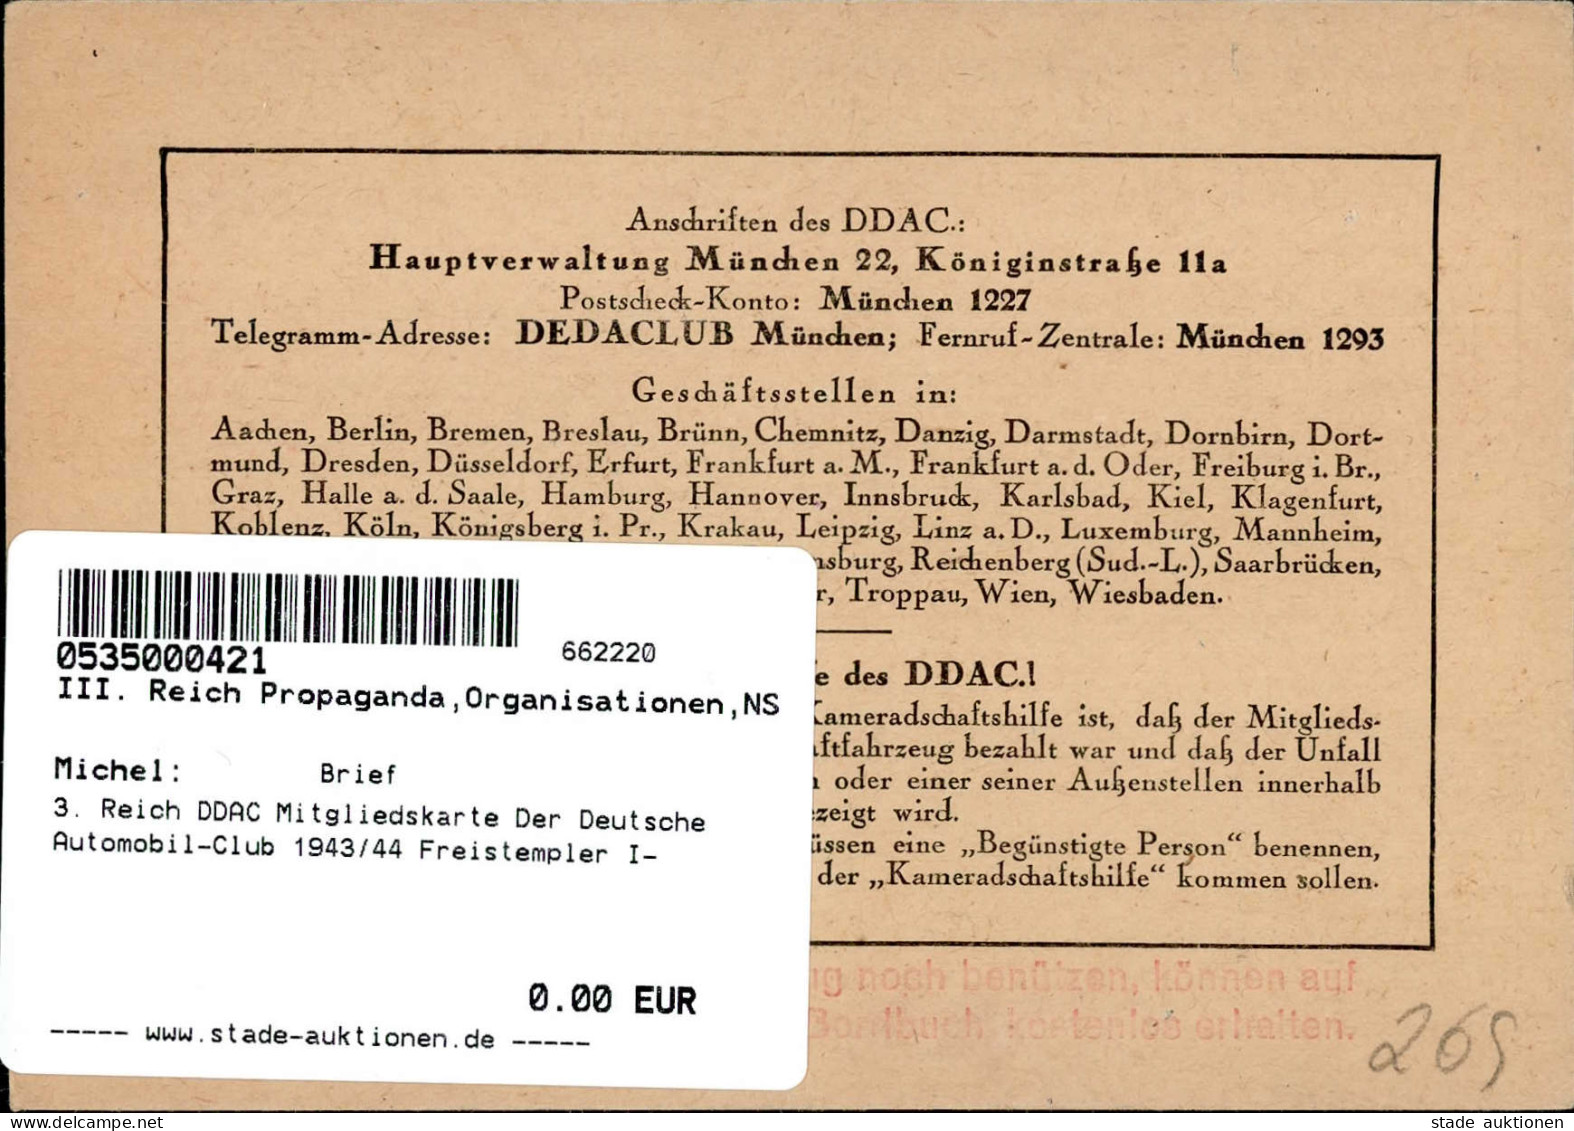 3. Reich DDAC Mitgliedskarte Der Deutsche Automobil-Club 1943/44 Freistempler I- - Weltkrieg 1939-45